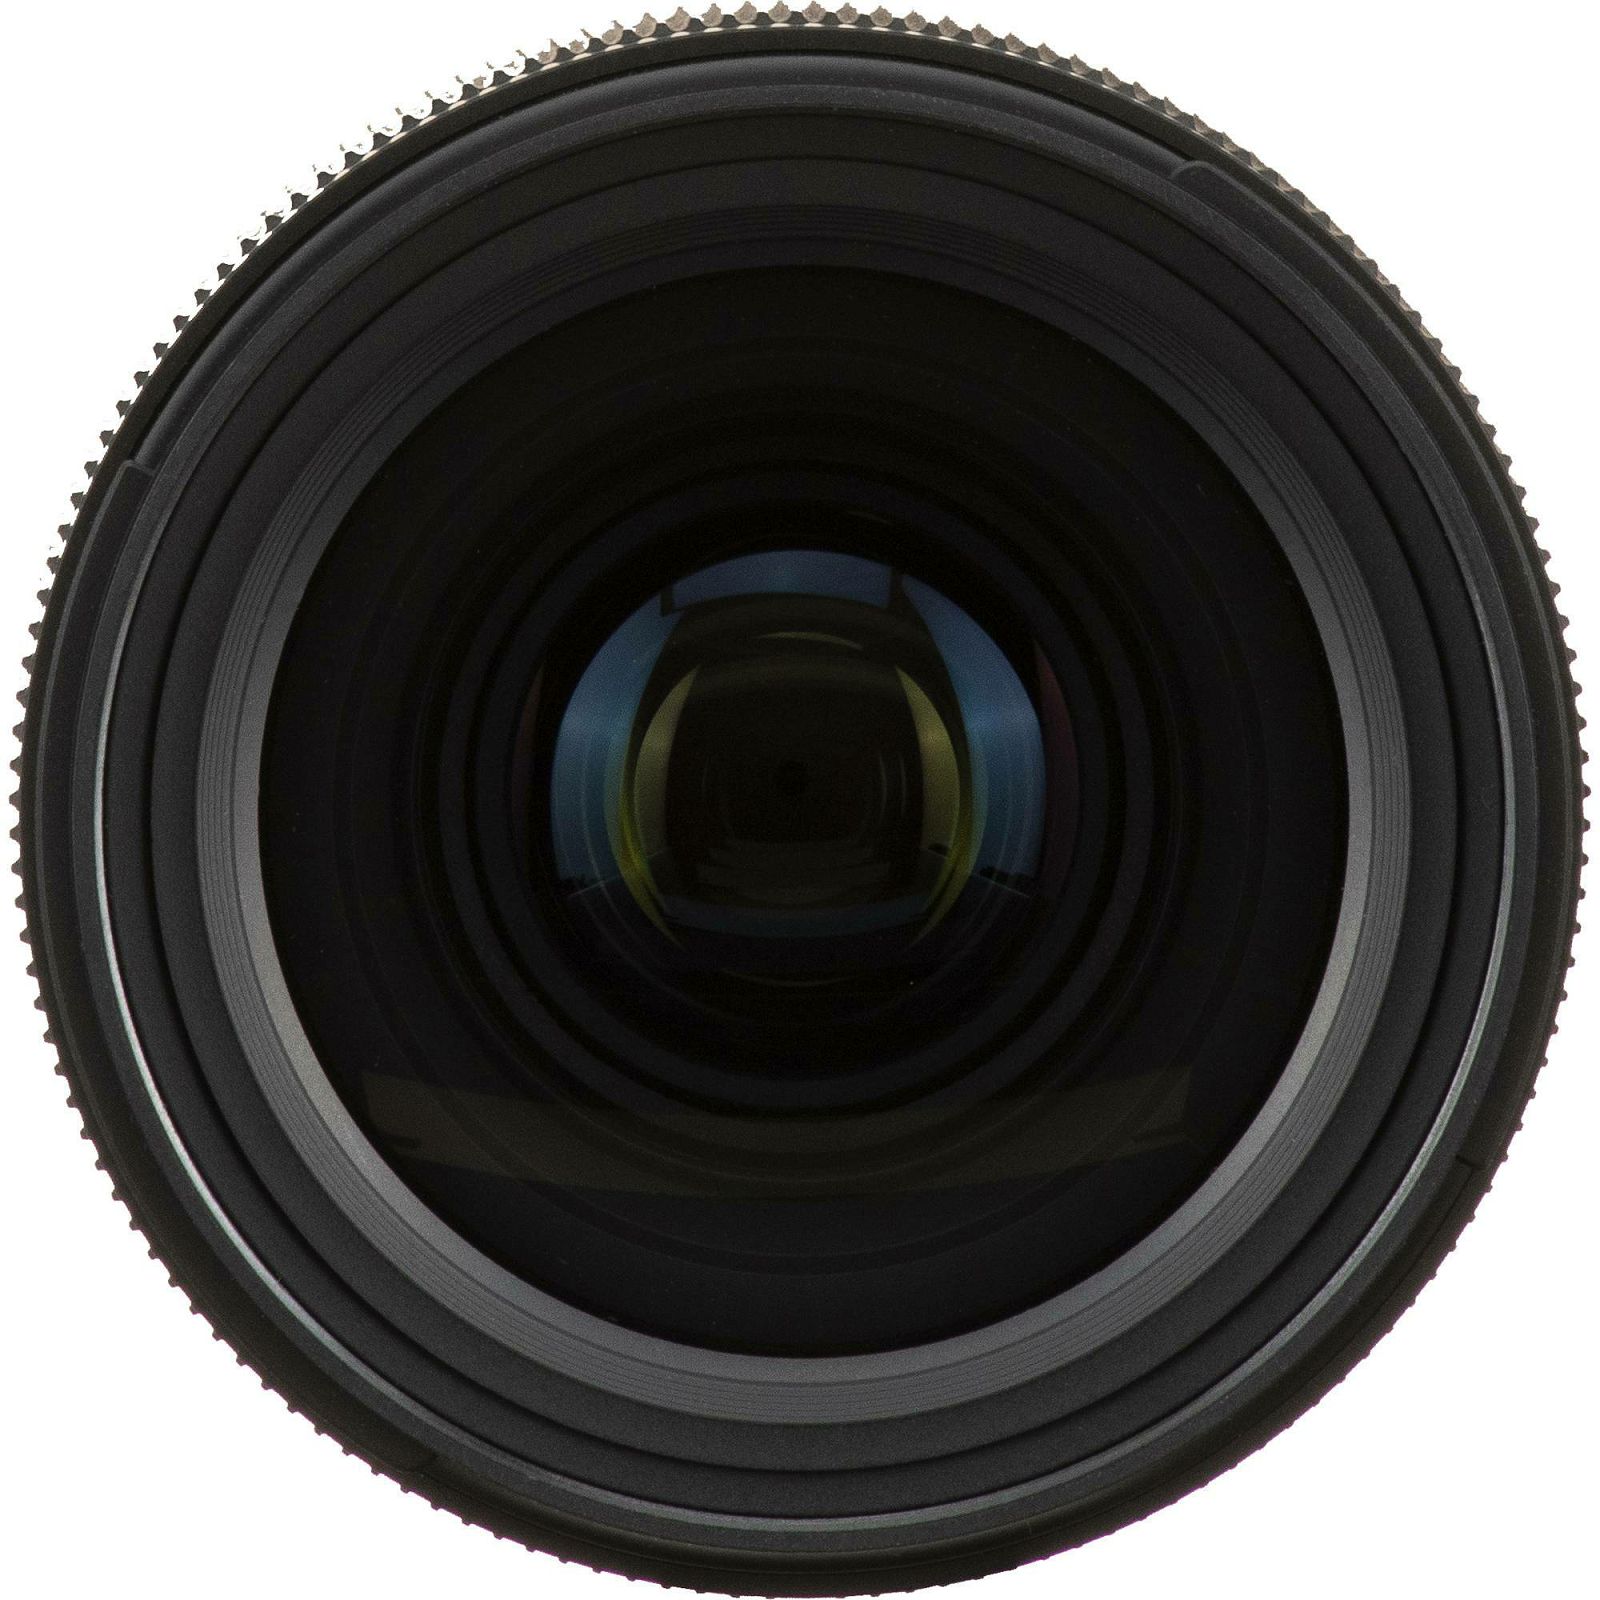 Tamron SP 35mm f/1.4 Di USD širokokutni objektiv za Nikon FX (F045N)